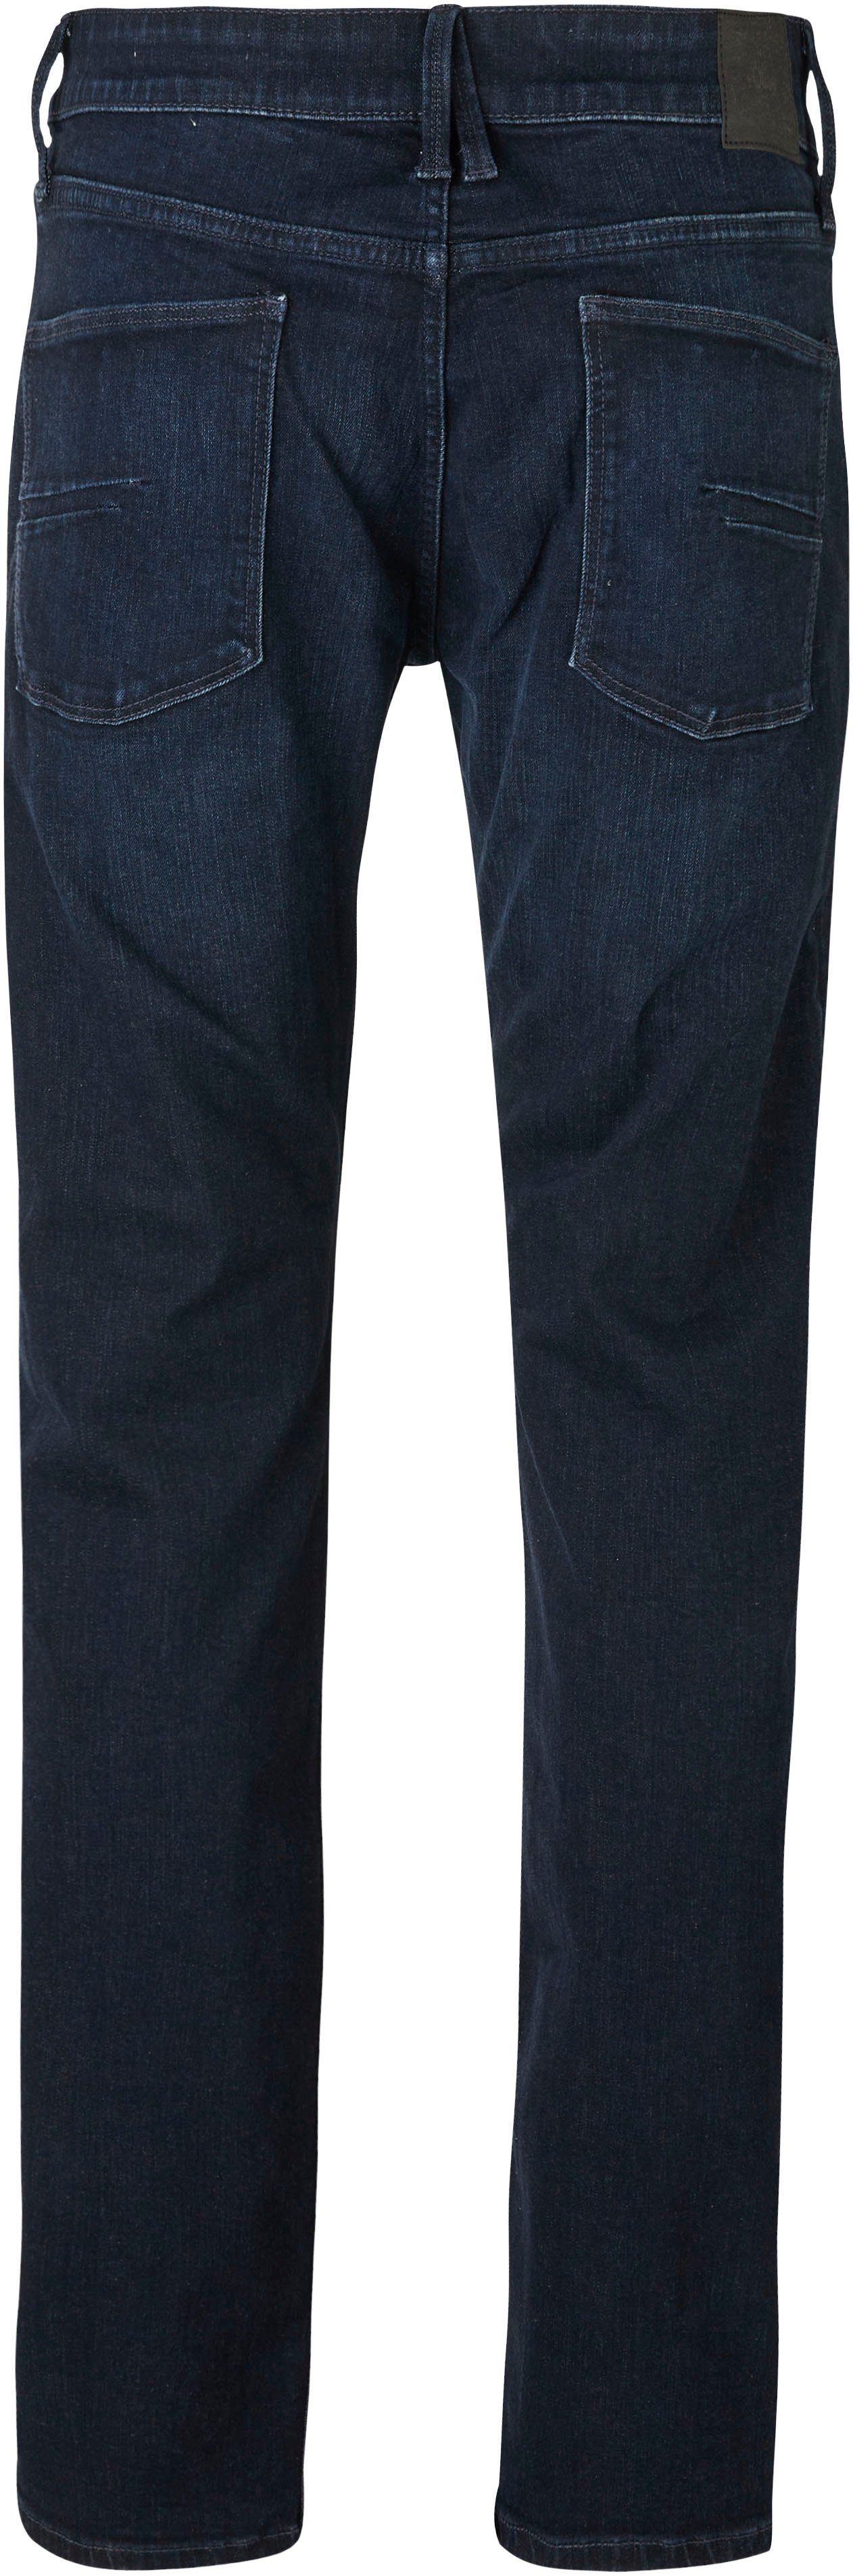 s.Oliver Bequeme Jeans mit Eingrifftaschen dark 32 blue Gesäß- und